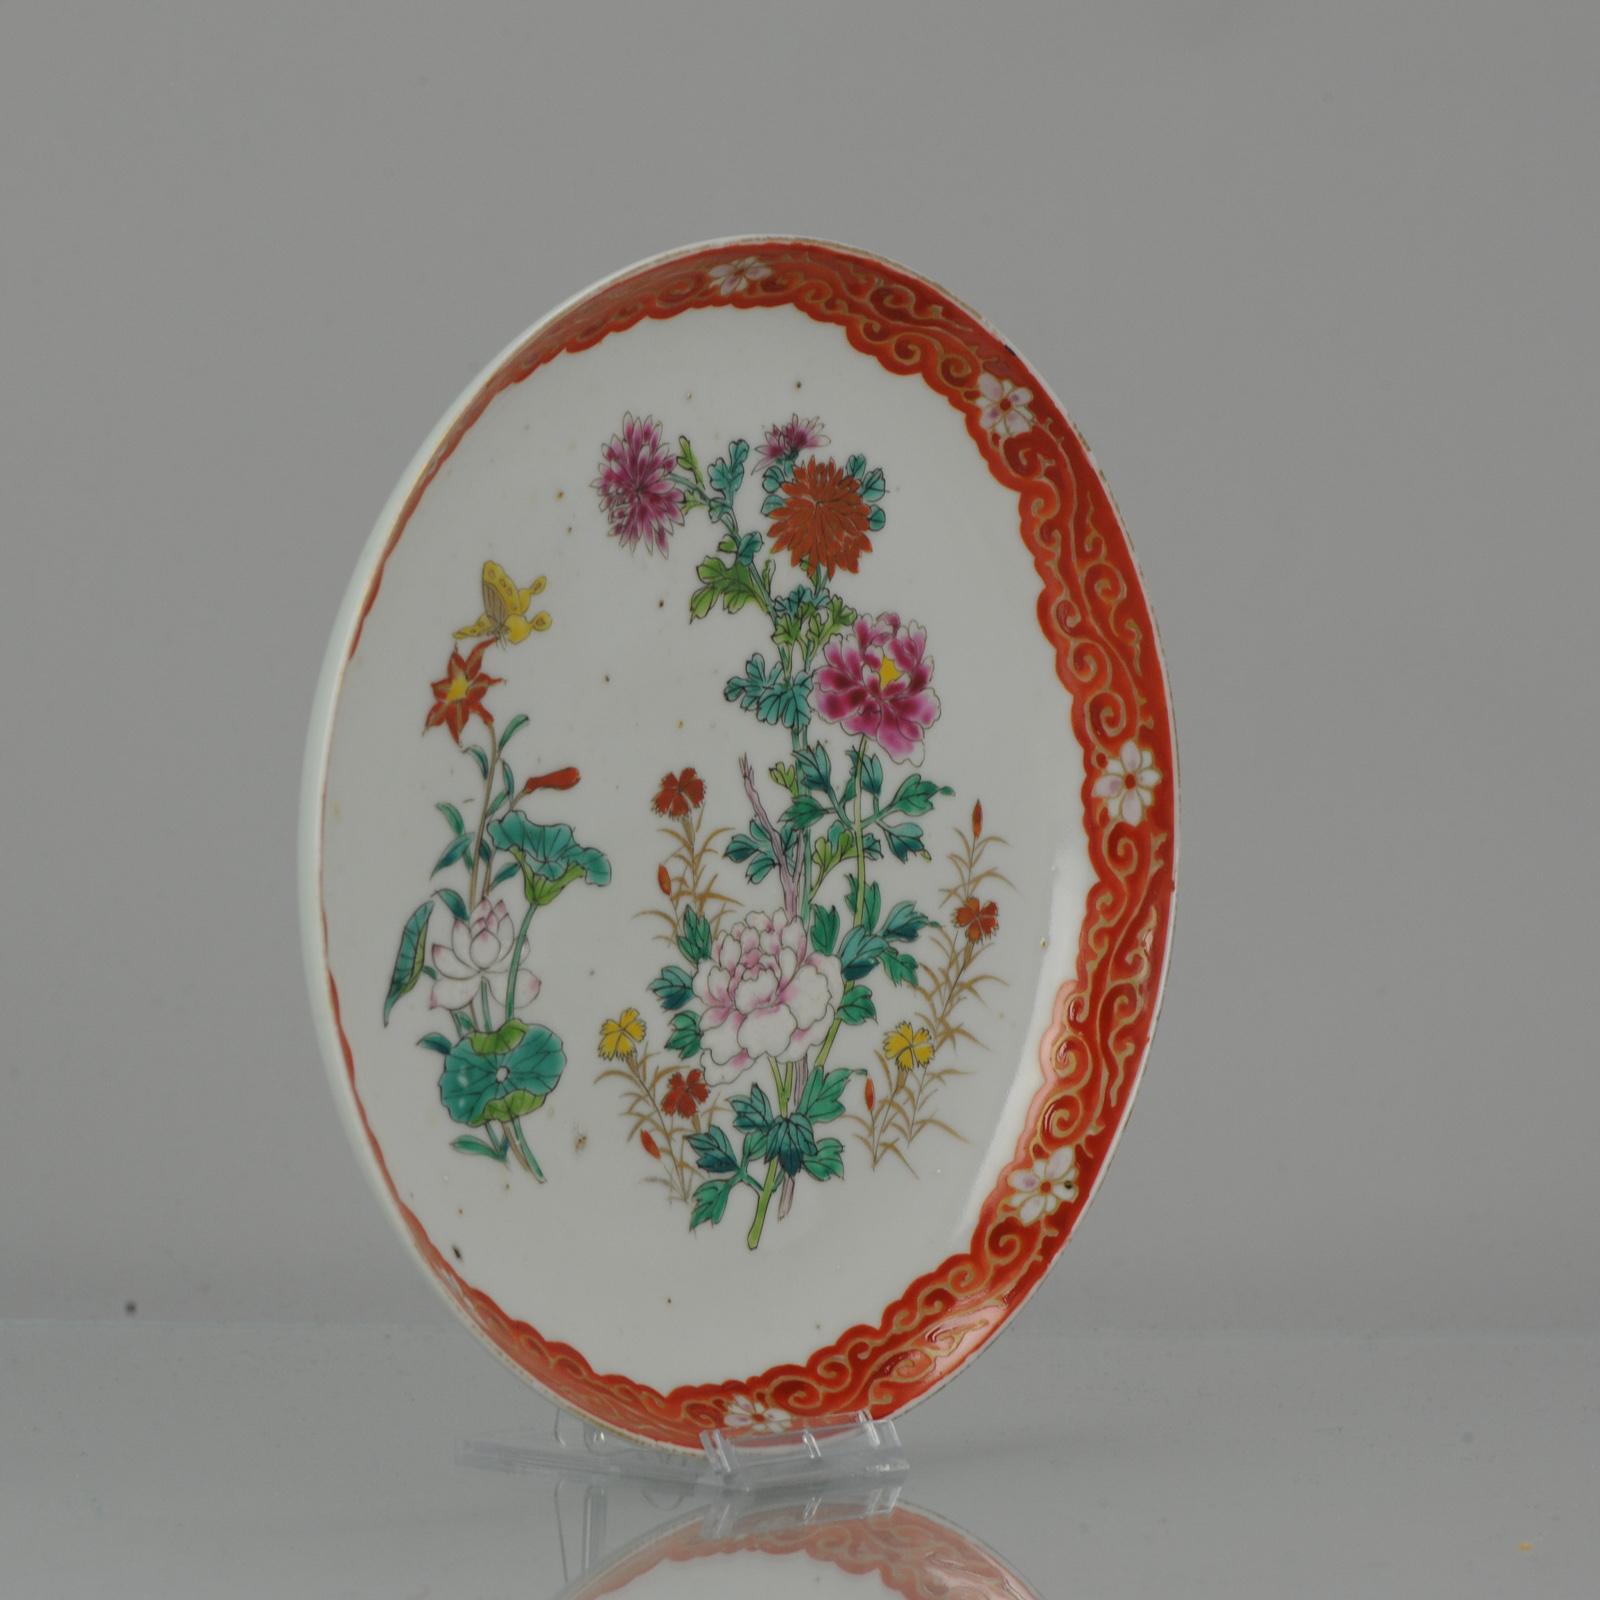 Un plat en porcelaine japonaise très joliment décoré de couleurs polychromes.

Marqué à la base d'une marque surglacée à 6 caractères, Hichozan Shinpo Zo.

La scène centrale représente un paysage fleuri et animé, avec des papillons qui volent